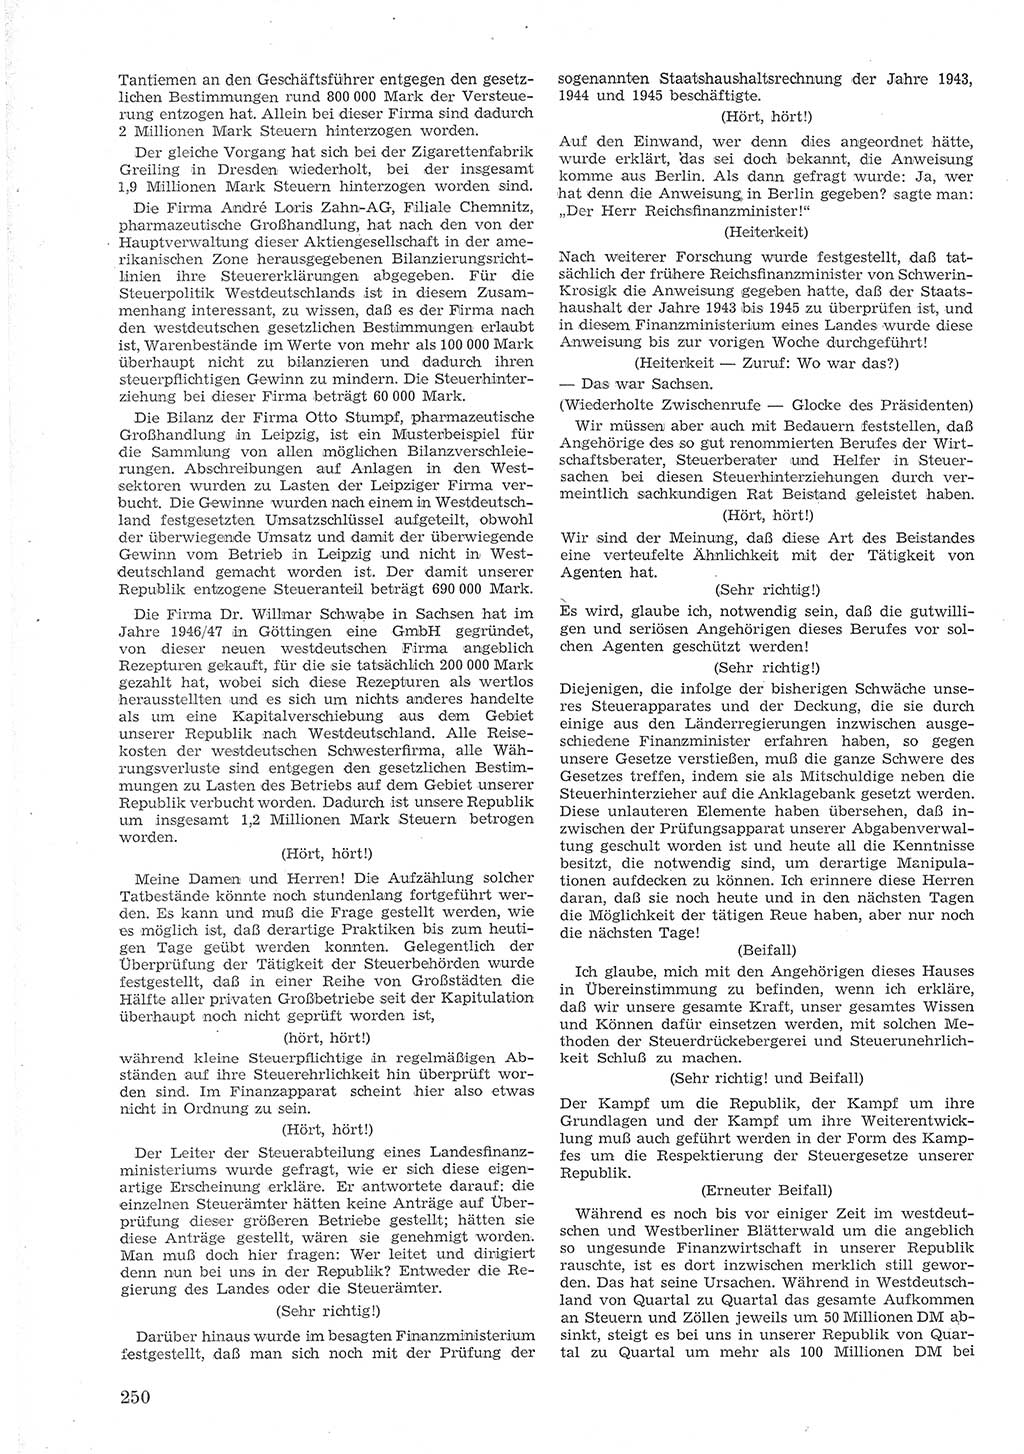 Provisorische Volkskammer (VK) der Deutschen Demokratischen Republik (DDR) 1949-1950, Dokument 264 (Prov. VK DDR 1949-1950, Dok. 264)